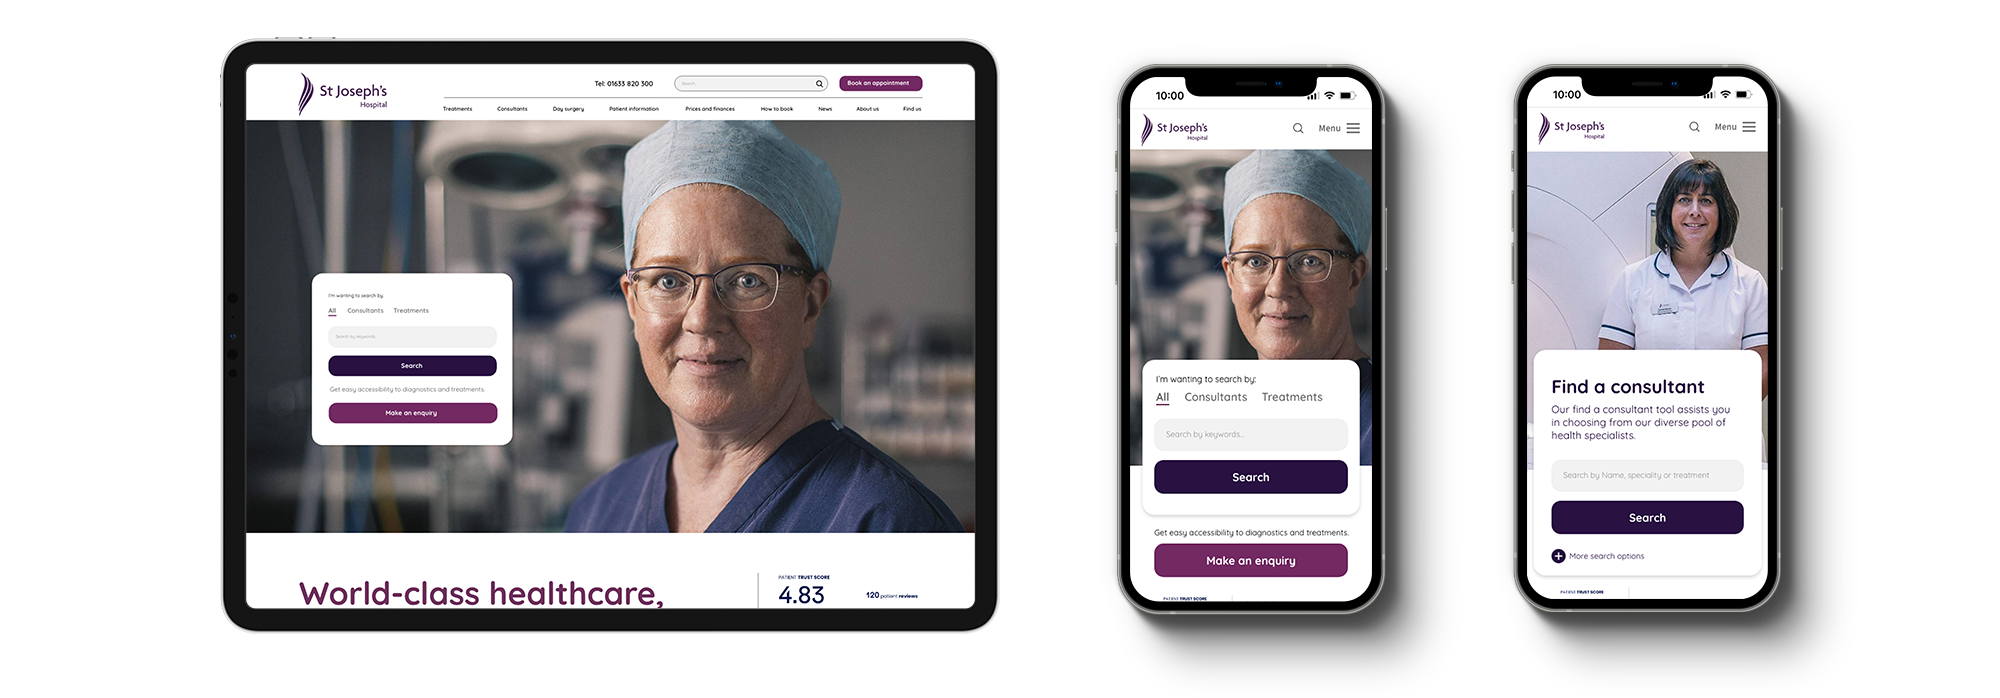 Website design | iPads showcasing design work for St Josephs Hospital